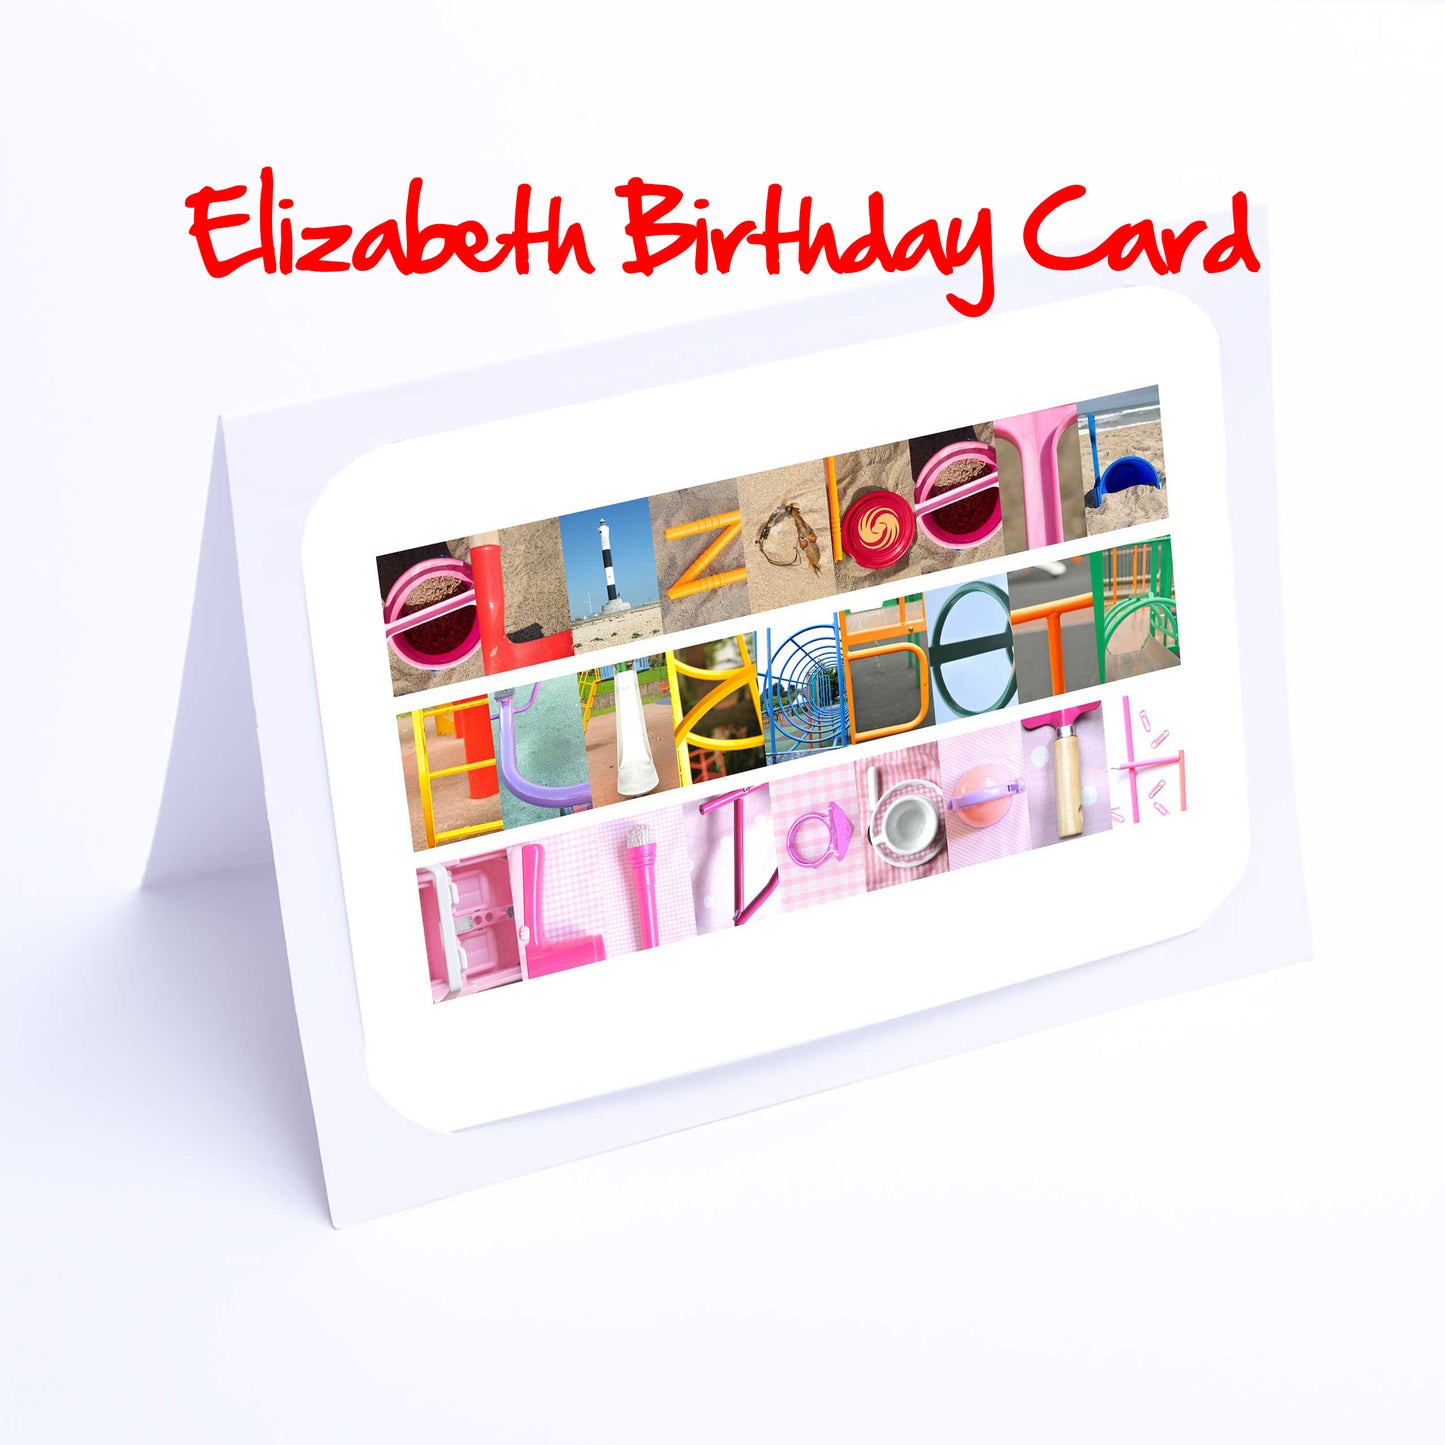 Edi - Ell Girls Personalised Card - Edith, Elaine, Eleanor, Elsie, Eliza, Elizabeth, Ella, Ellen, Ellie Any name - Personalised Cards